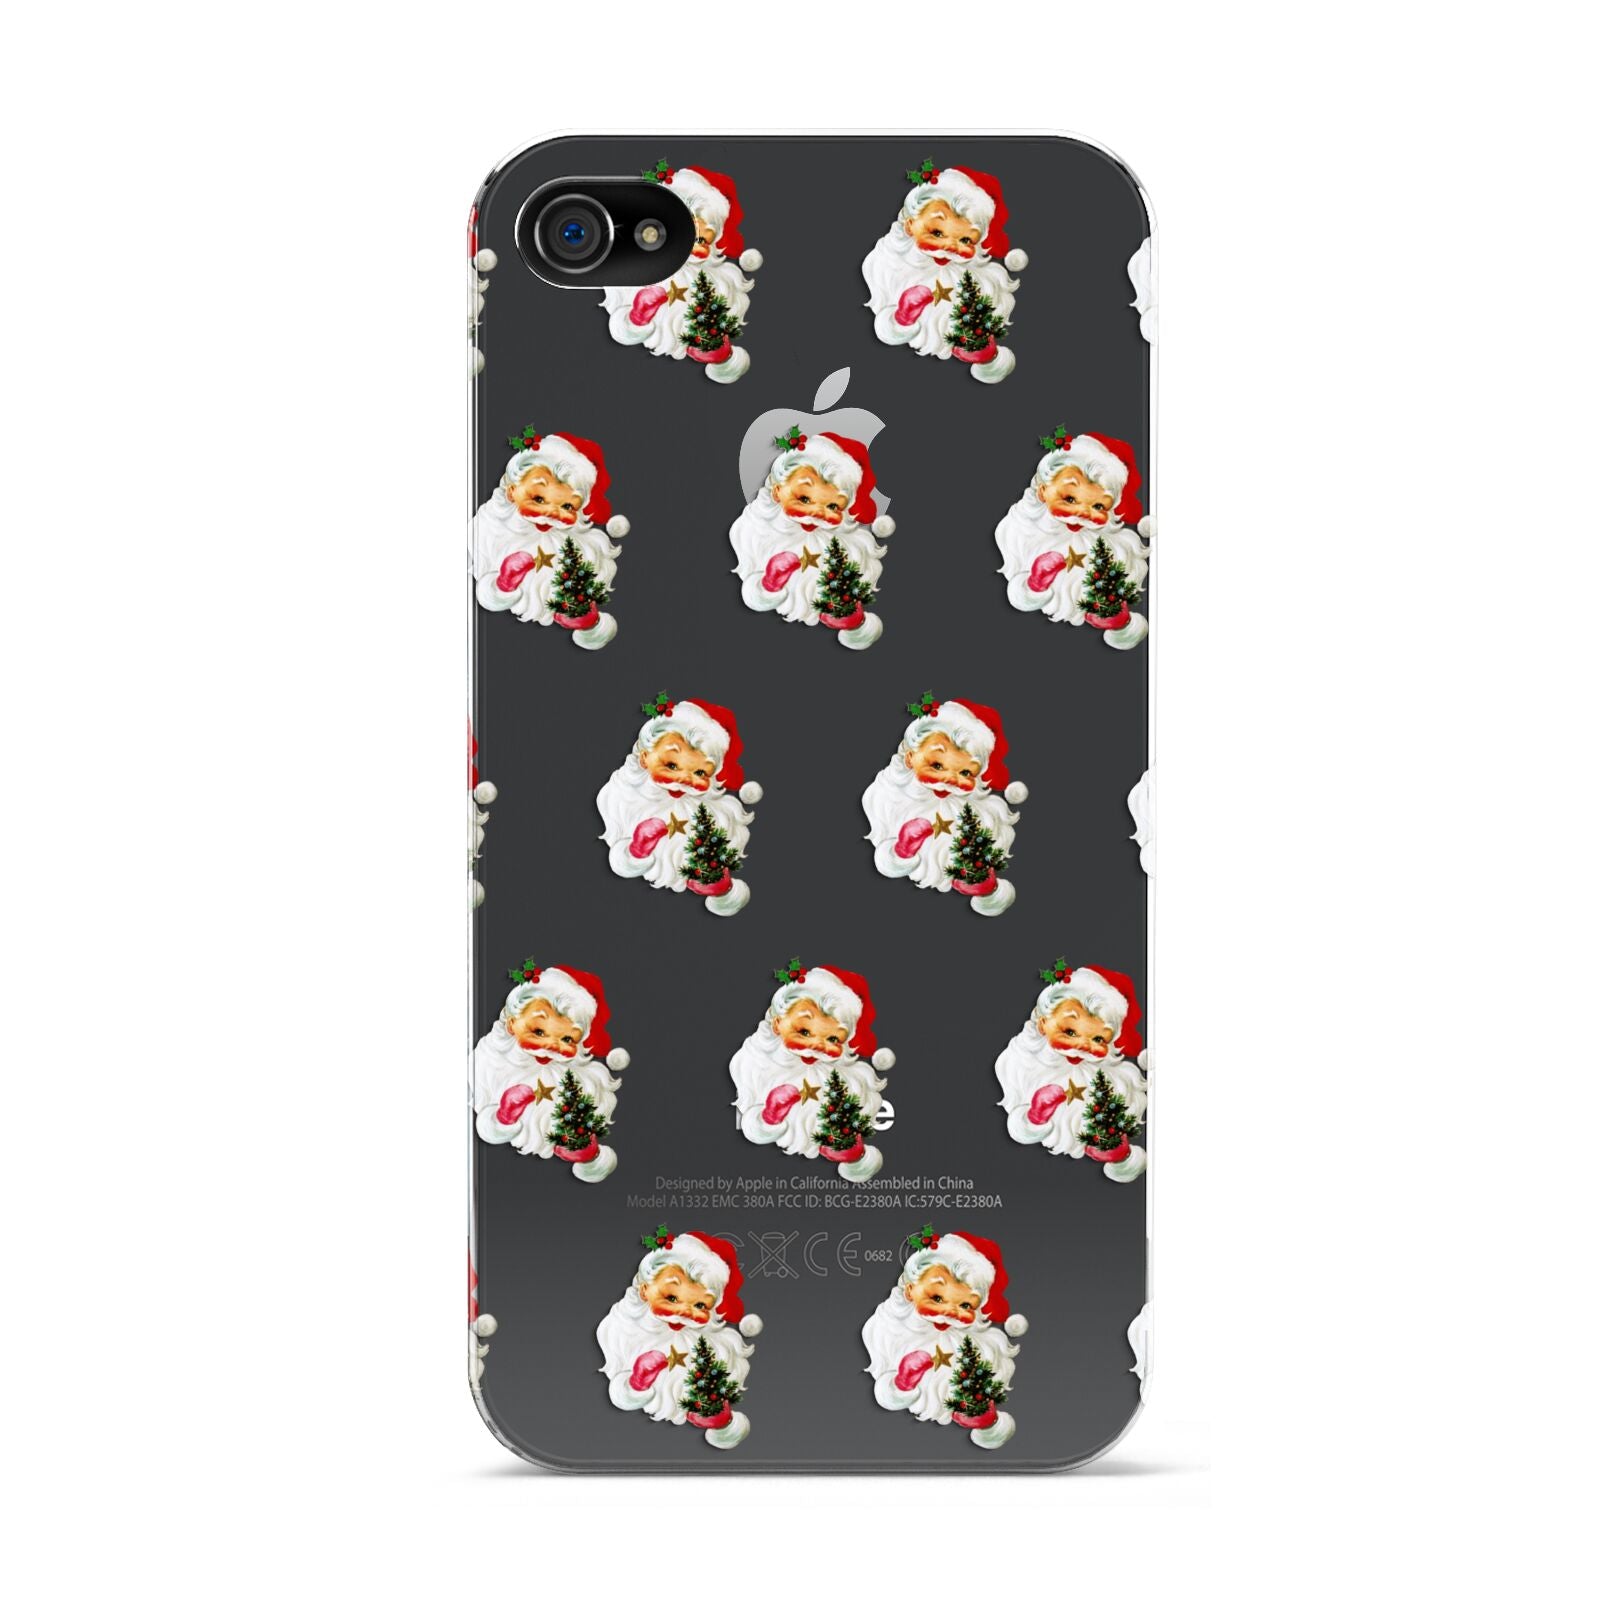 Retro Santa Face Apple iPhone 4s Case